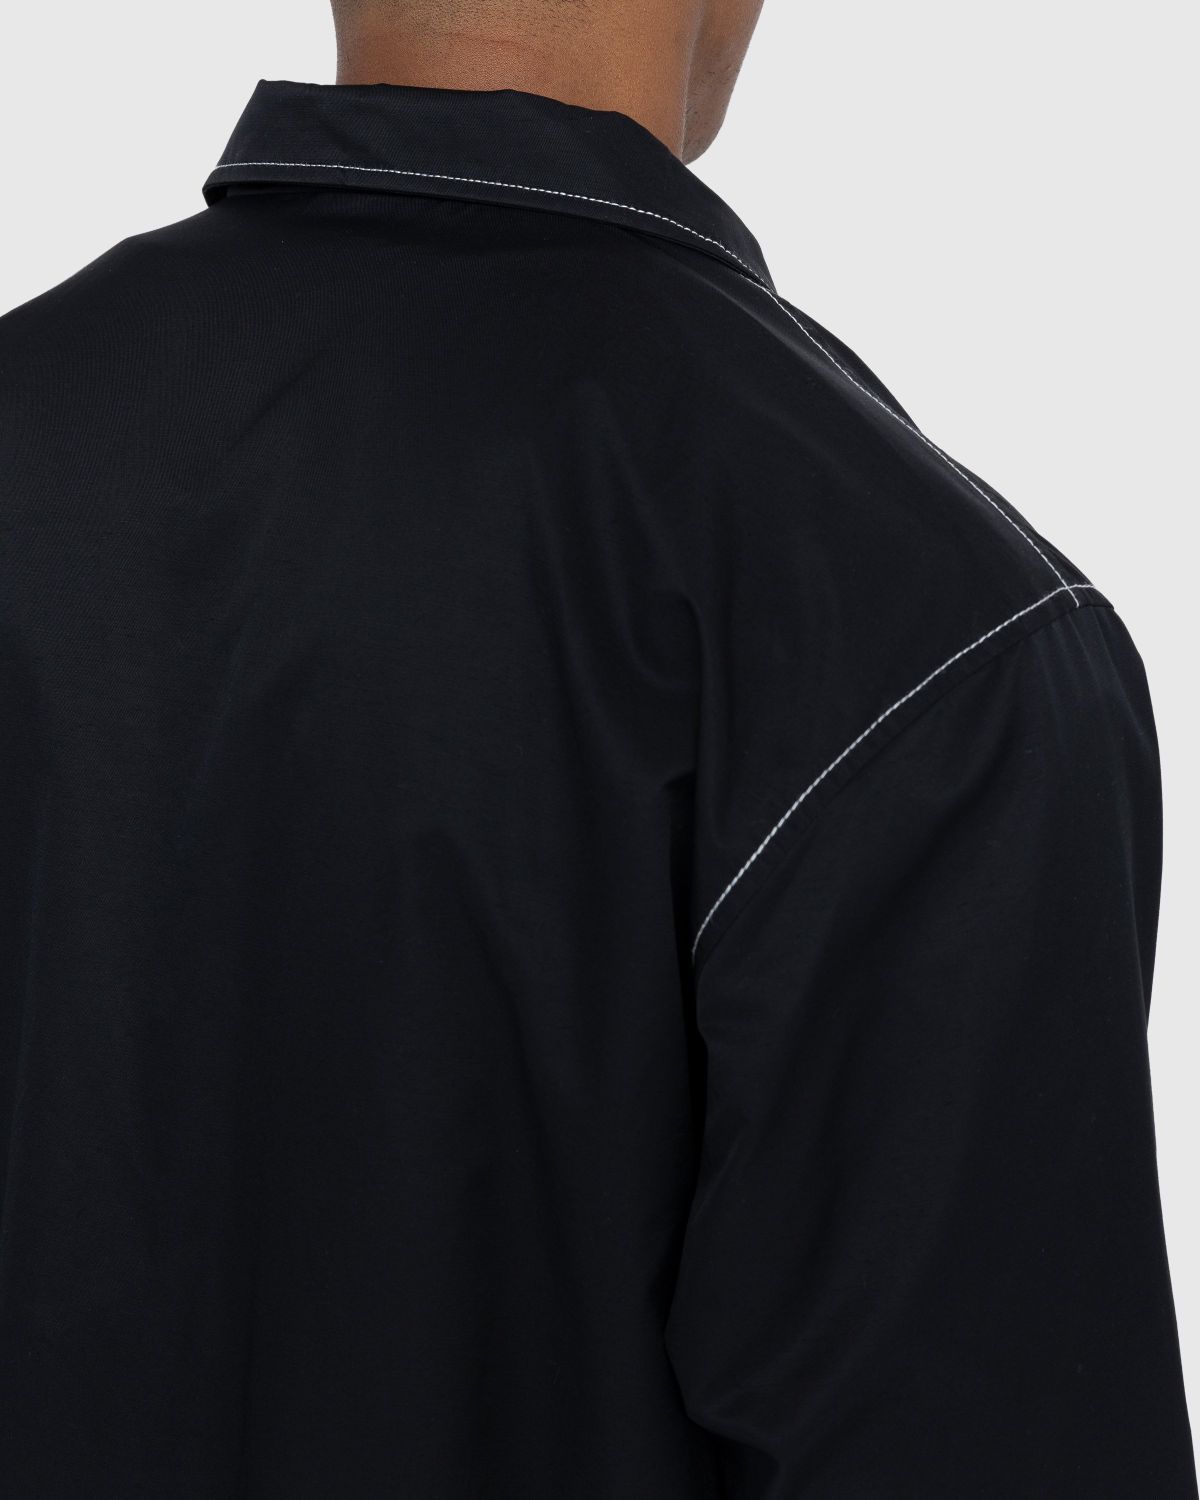 Highsnobiety – Brushed Nylon Jacket Black - Outerwear - Black - Image 5